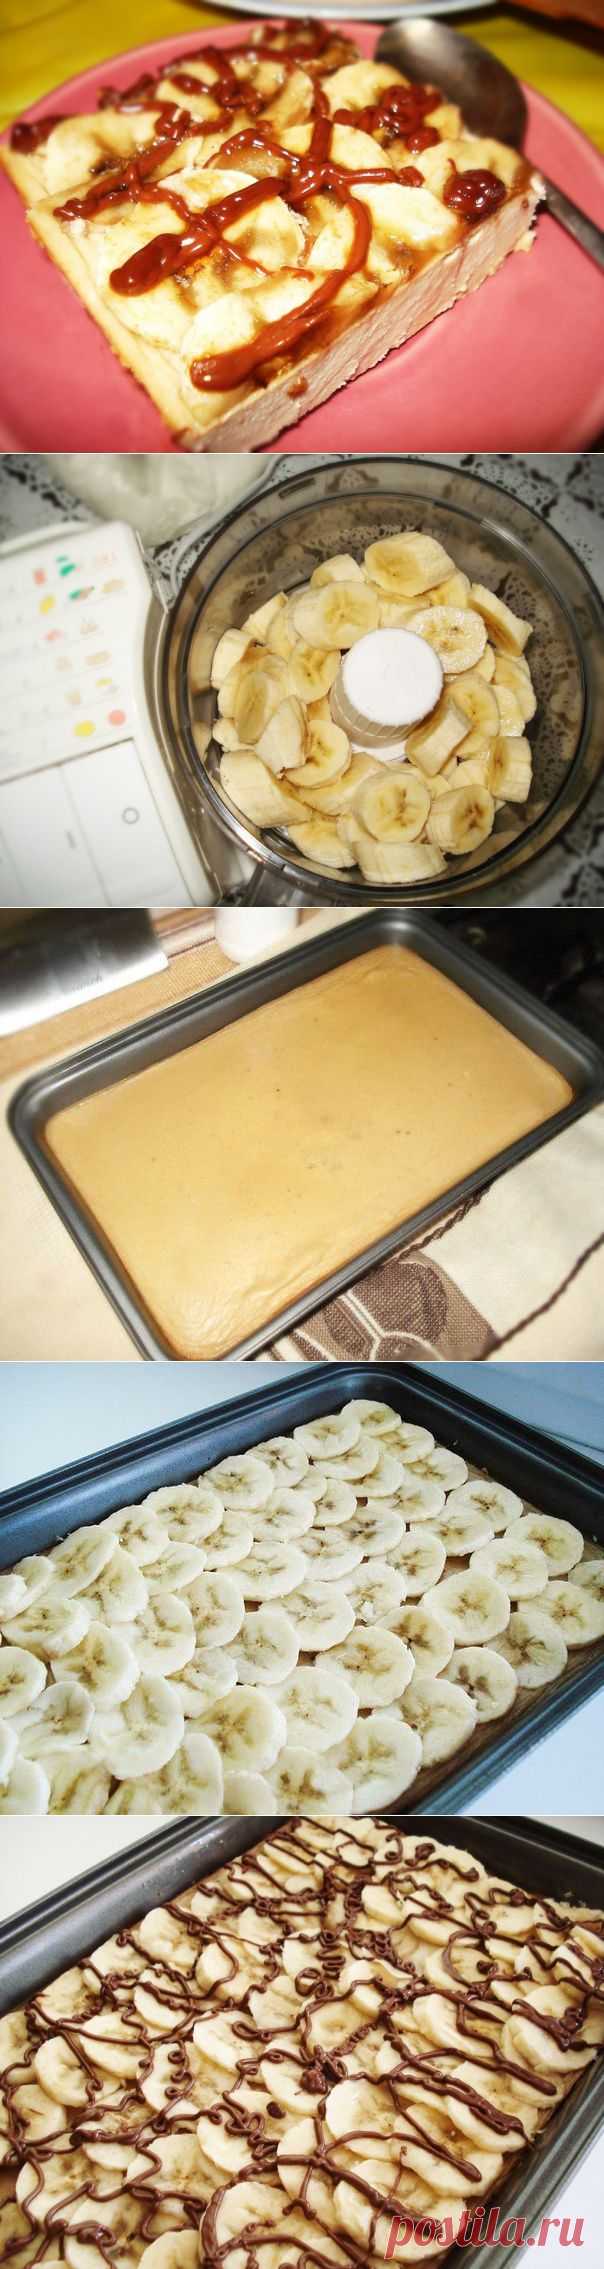 Как приготовить творожно-банановый десерт - рецепт, ингридиенты и фотографии